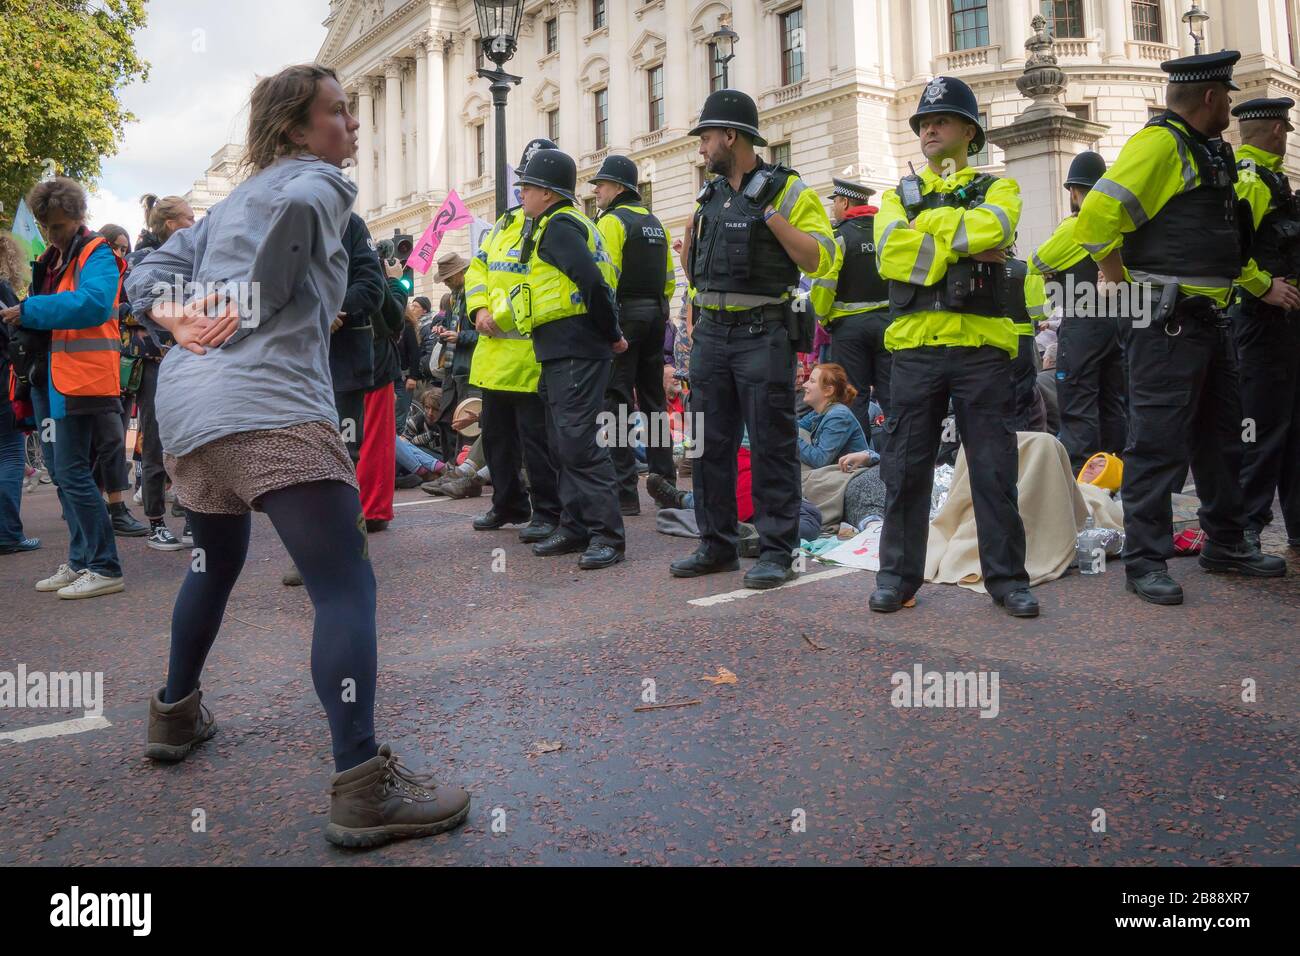 Londres, Royaume-Uni. - le 9 octobre 2019 - protestation contre la rébellion de l'extinction contre le changement climatique - une femme proteste danse devant les policiers Banque D'Images